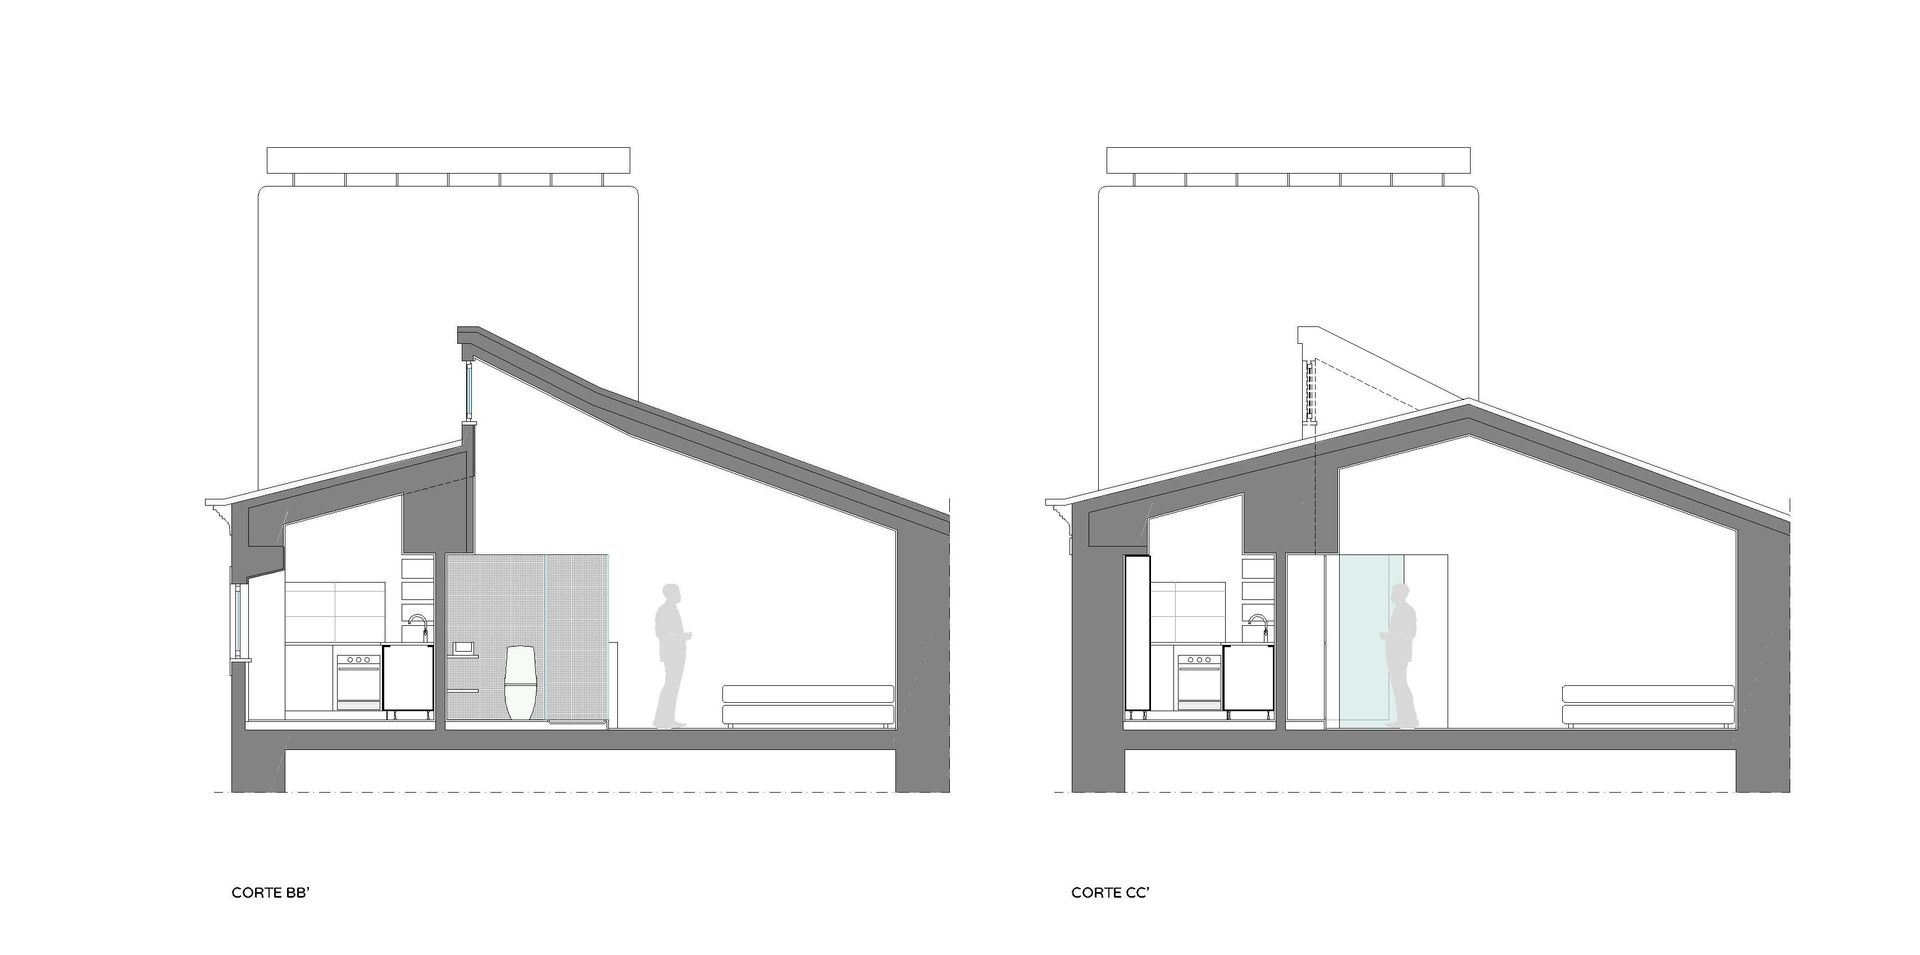 الحد الأدنى تنفيذ T2 Arquitectura & Interiores, تبسيطي